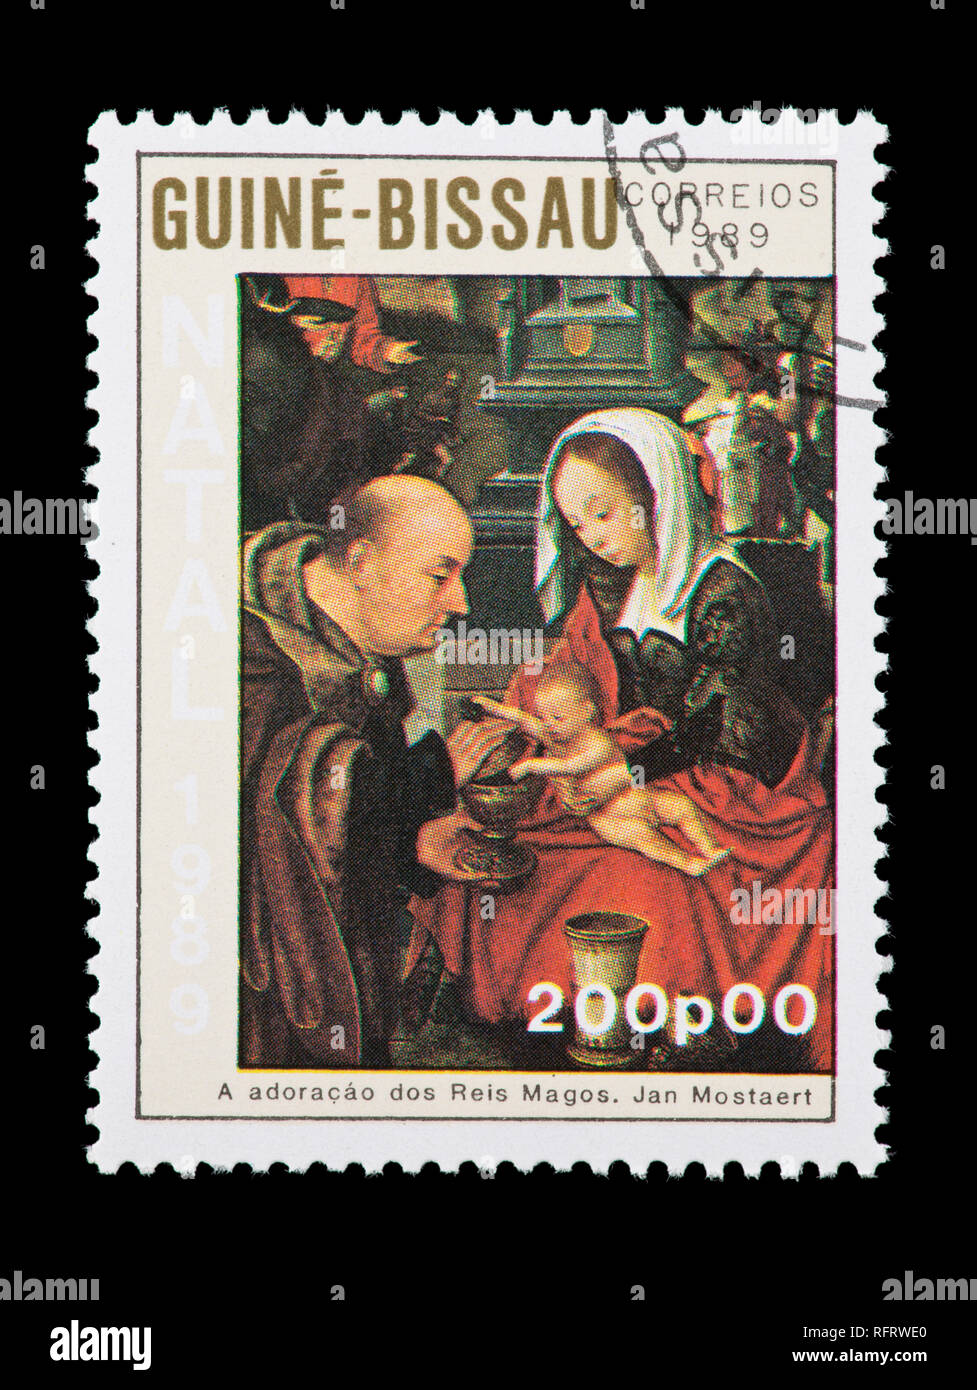 Briefmarke aus Guinea-Bissau, Darstellung der mostaert Gemälde der Madonna mit Kind. Stockfoto